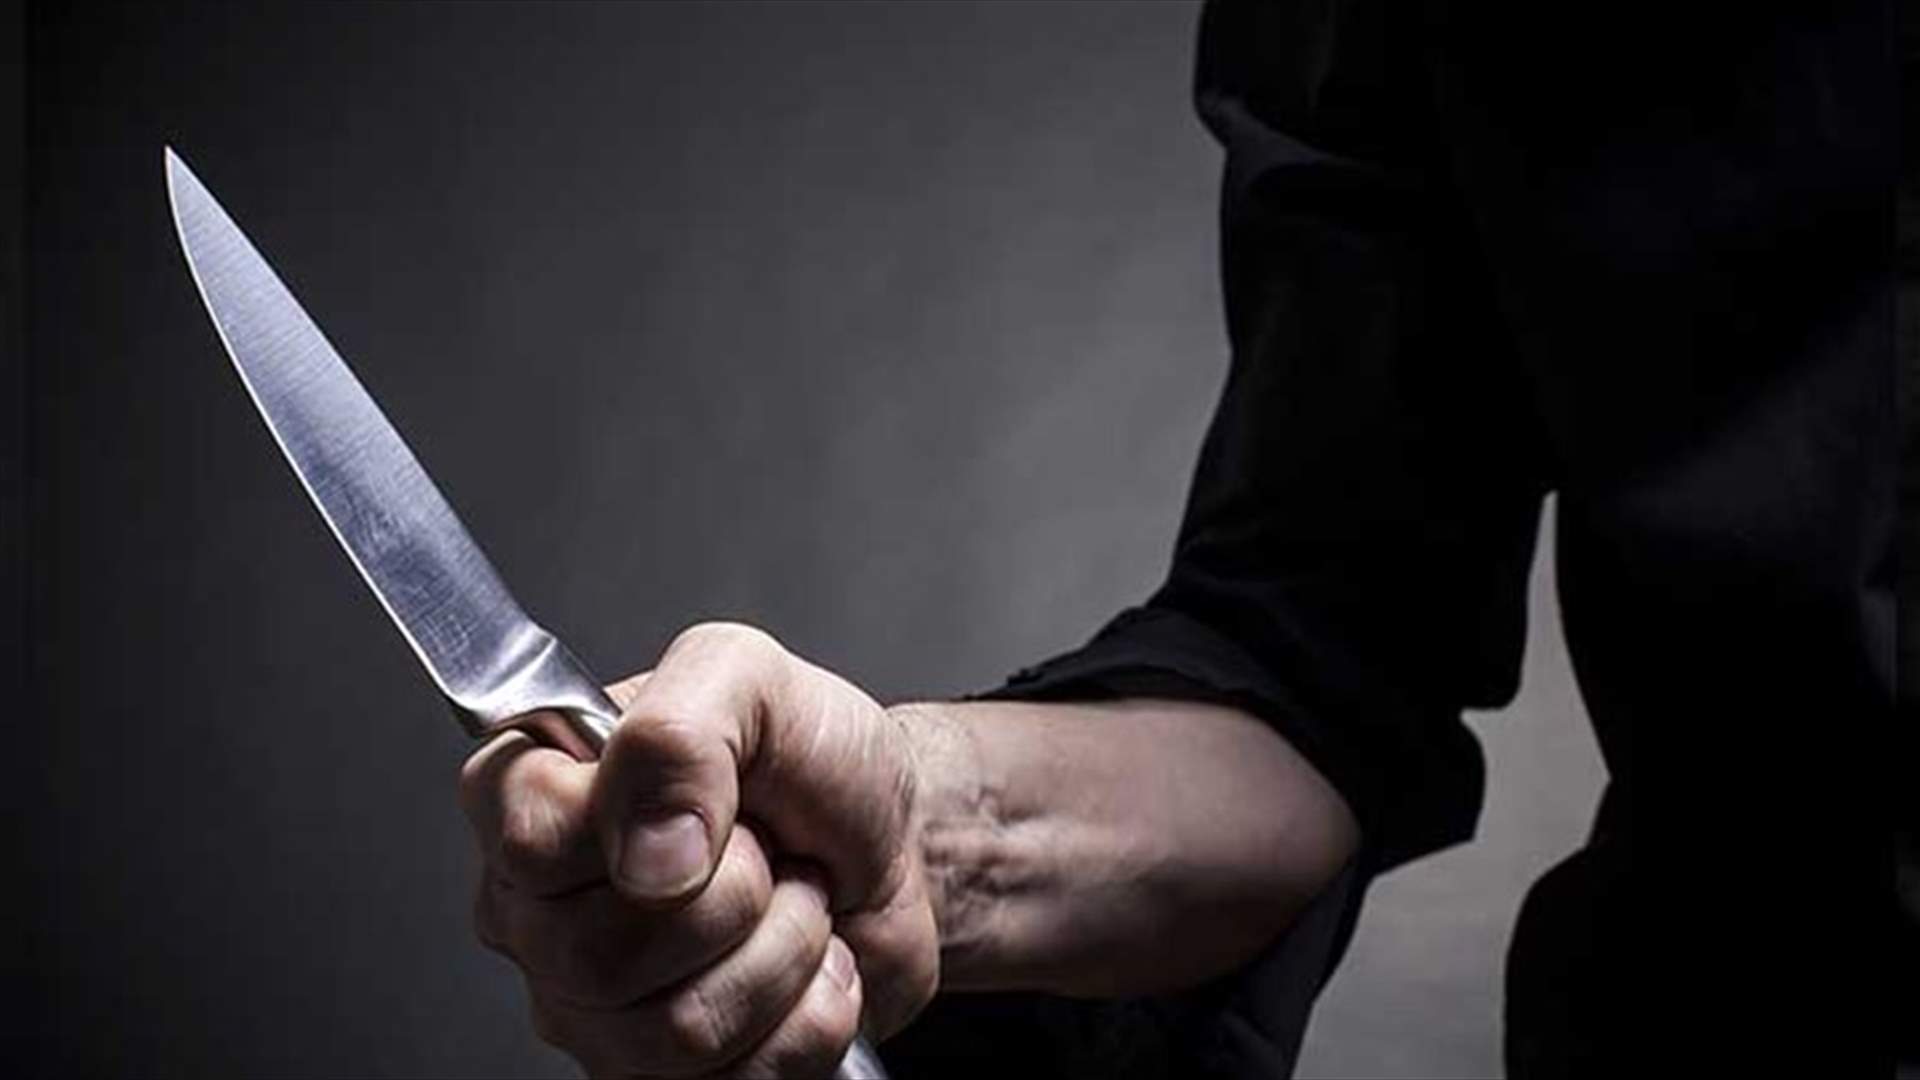 طبيب لبناني وُجد مطعونا بالسكين في شقته في باريس...